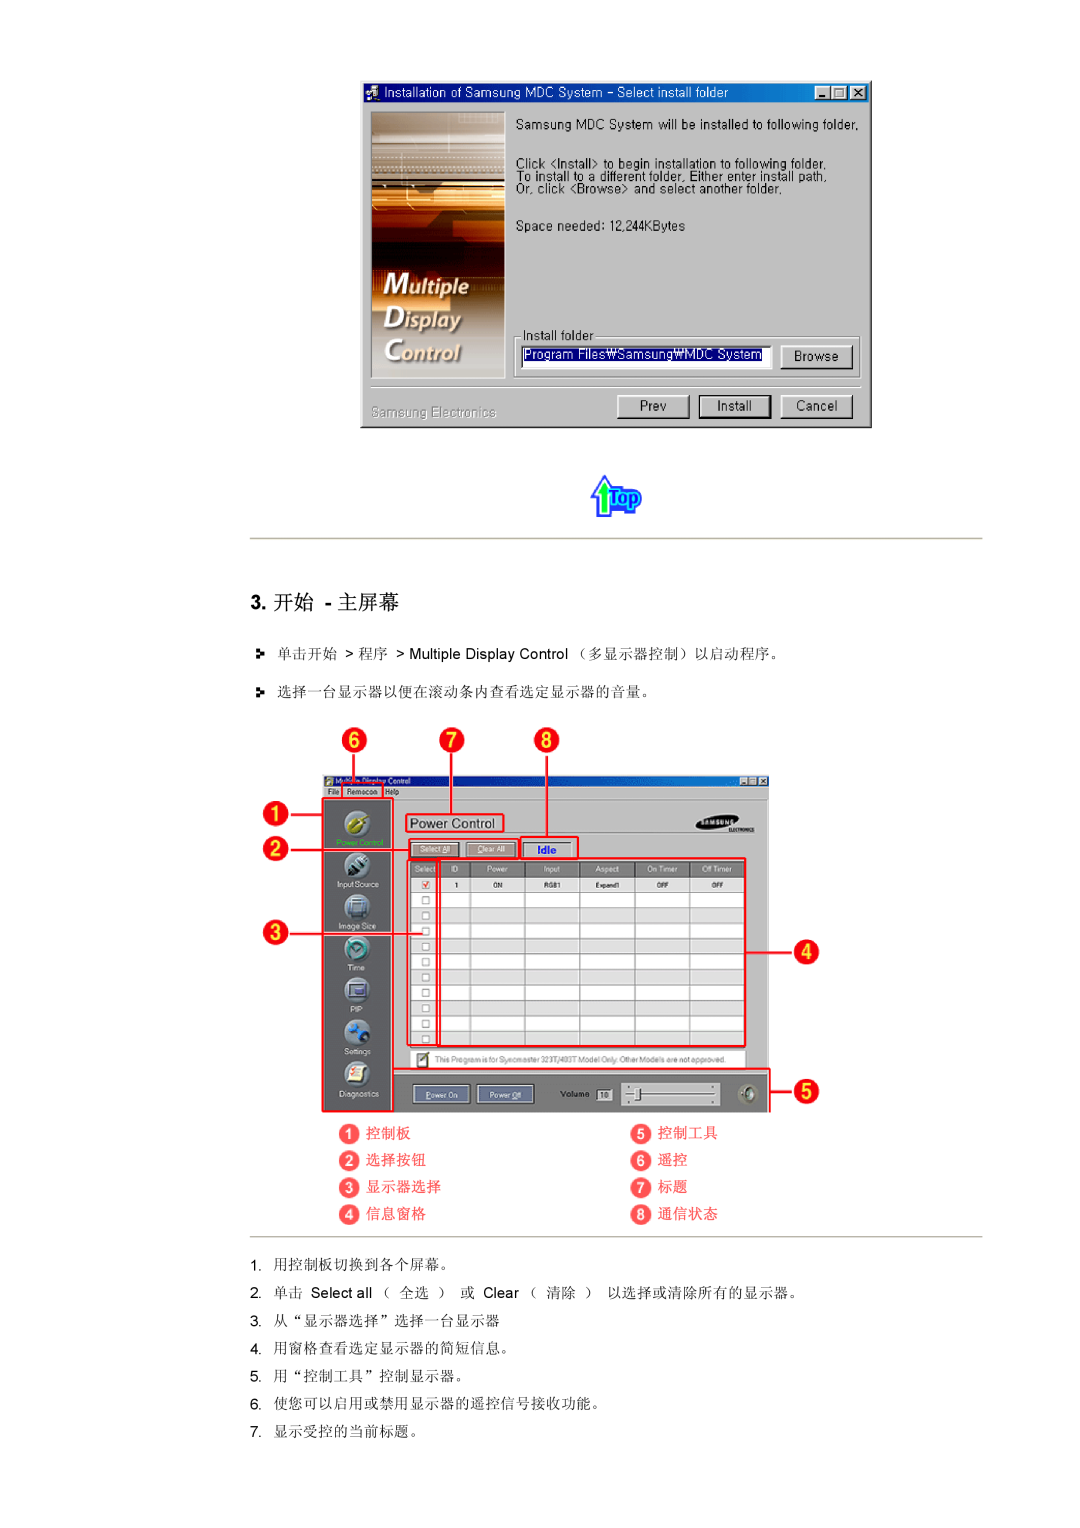 Samsung CK40PSNS/EDC, CK40PSNBG/EDC, CK40BSNS/EDC manual 3. 开始 - 主屏幕, 控制工具, 选择按钮, 显示器选择, 信息窗格, 通信状态 